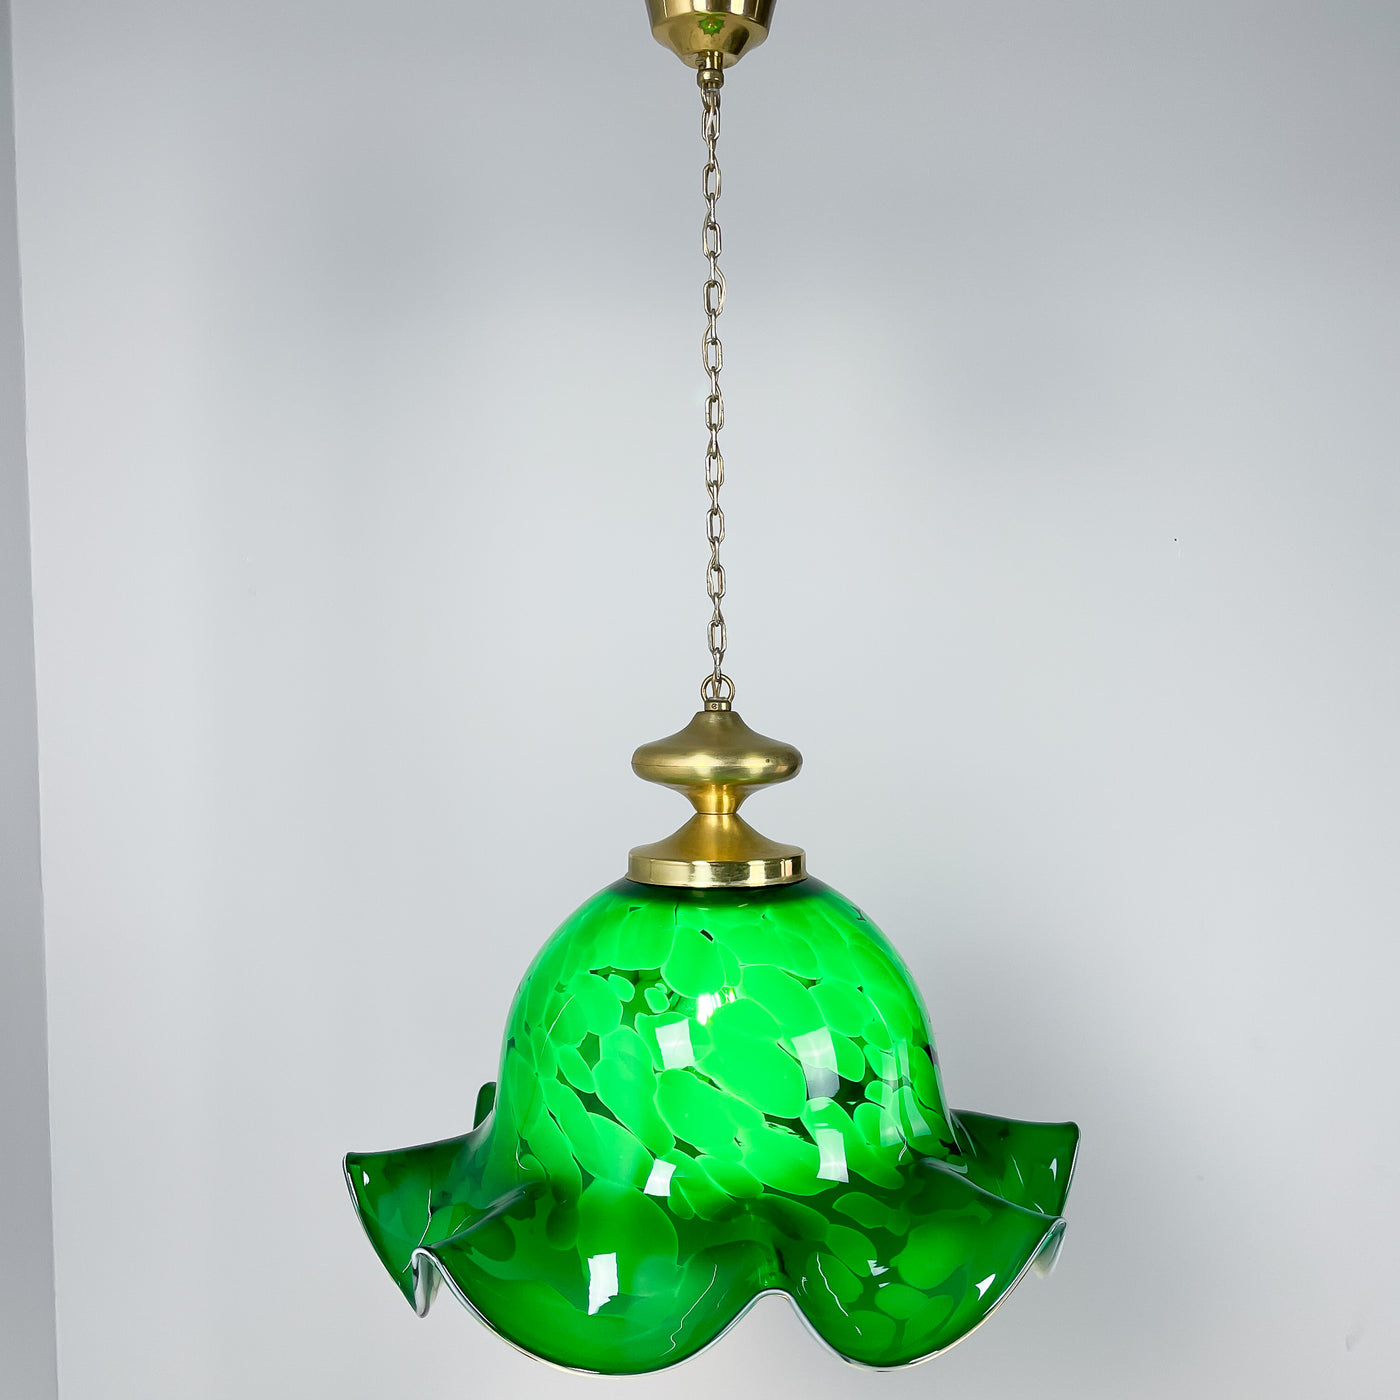 Lampa grönt glas och mässing